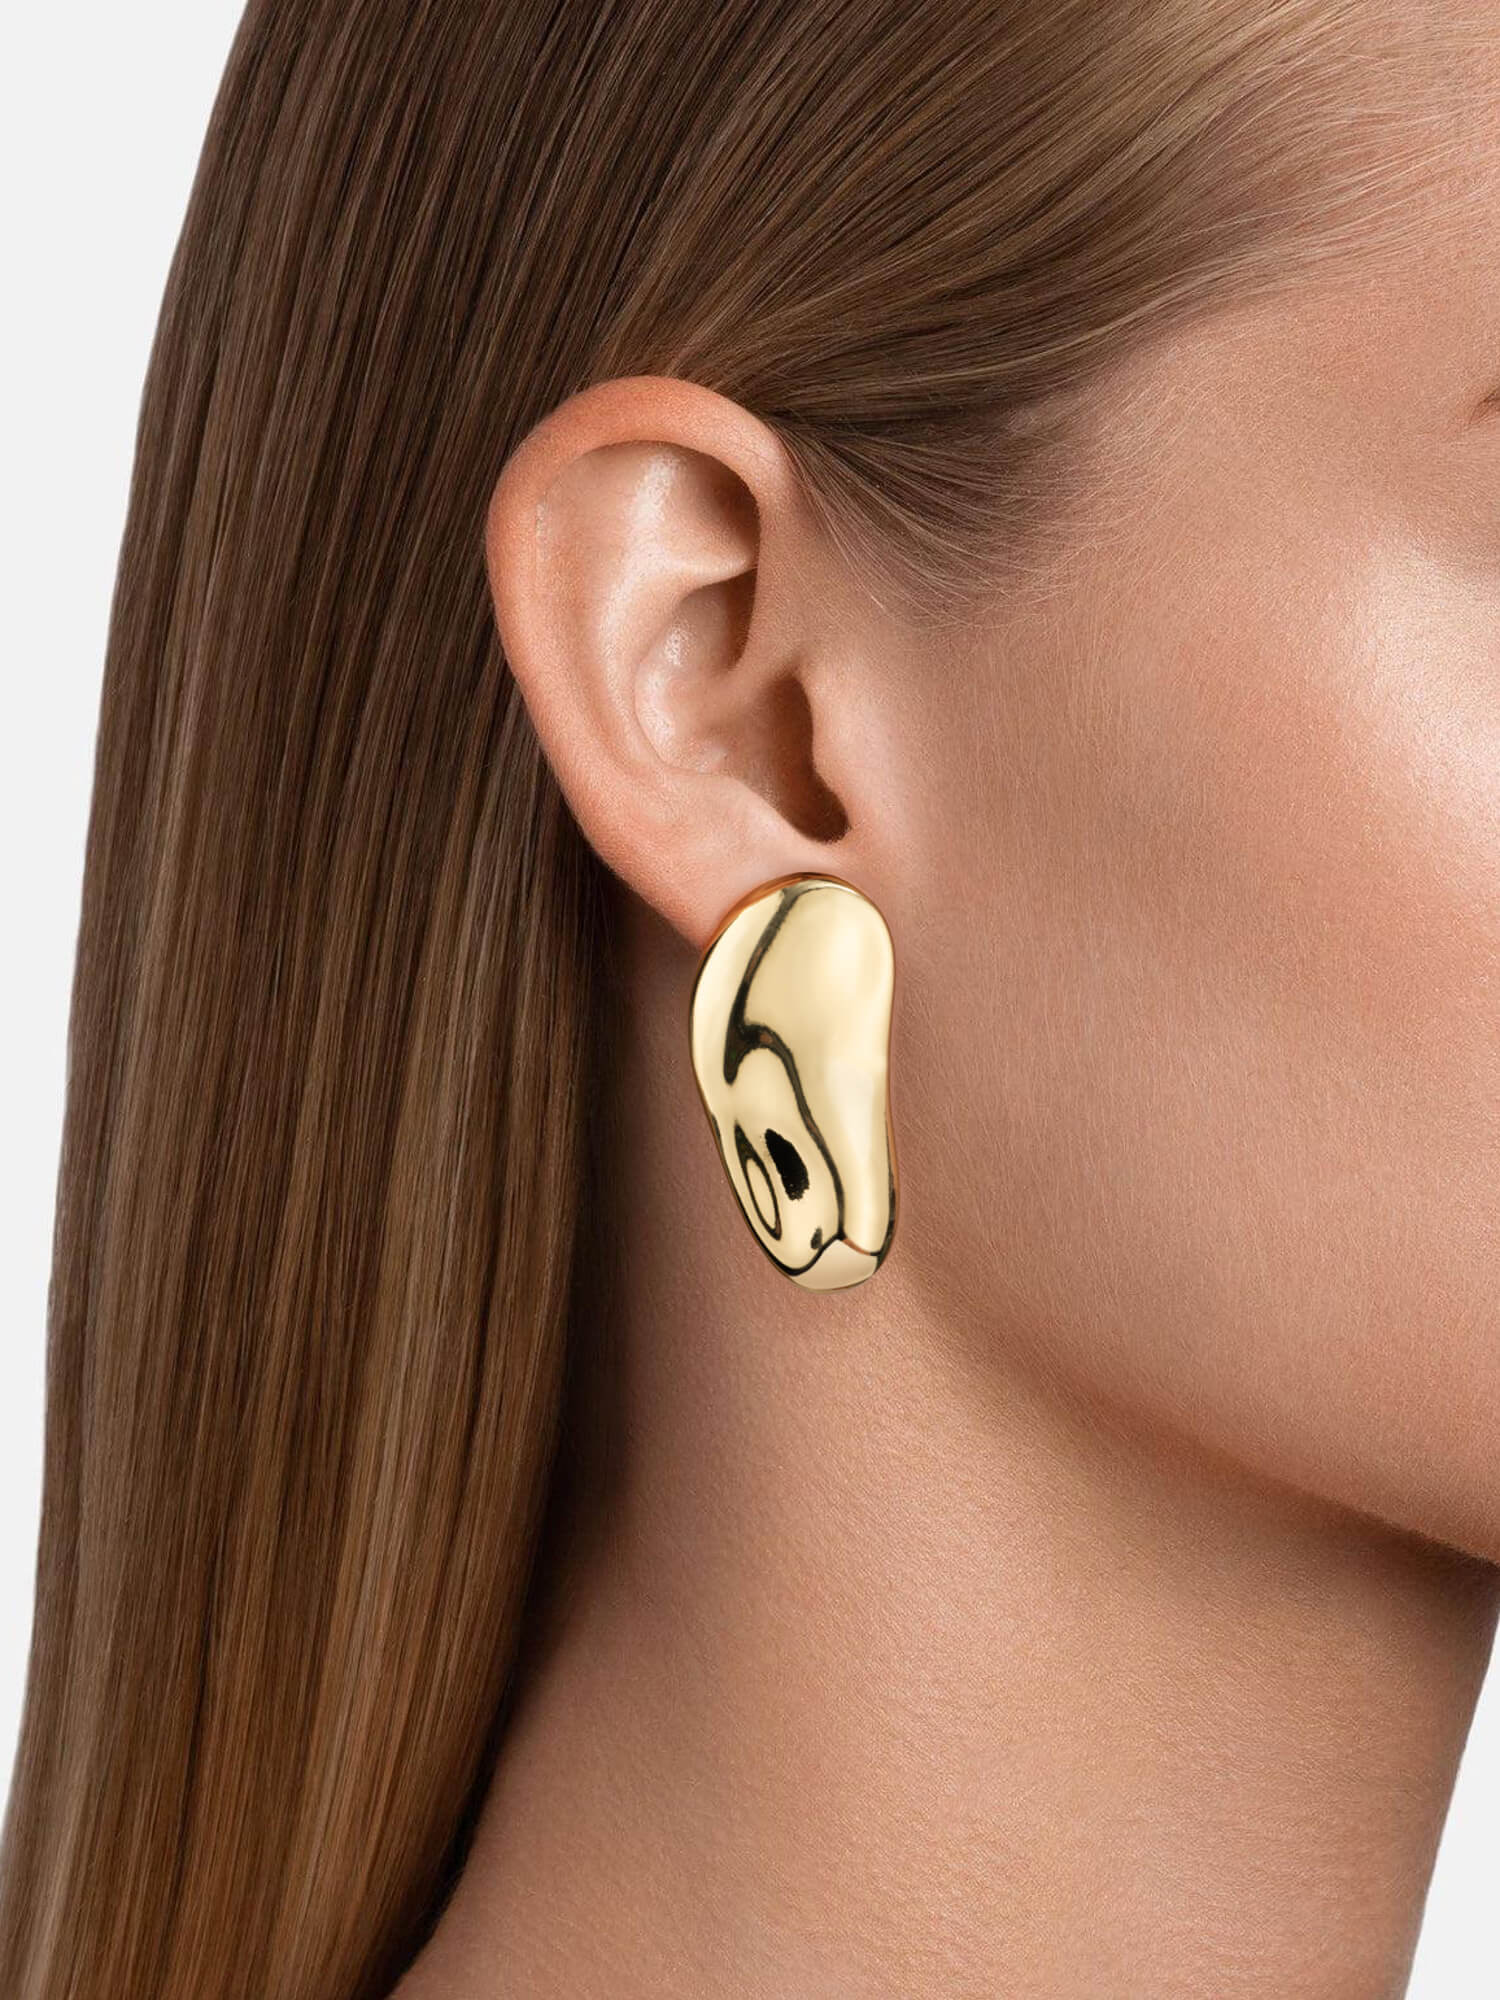 Gold French Asymmetric Earrings On Model